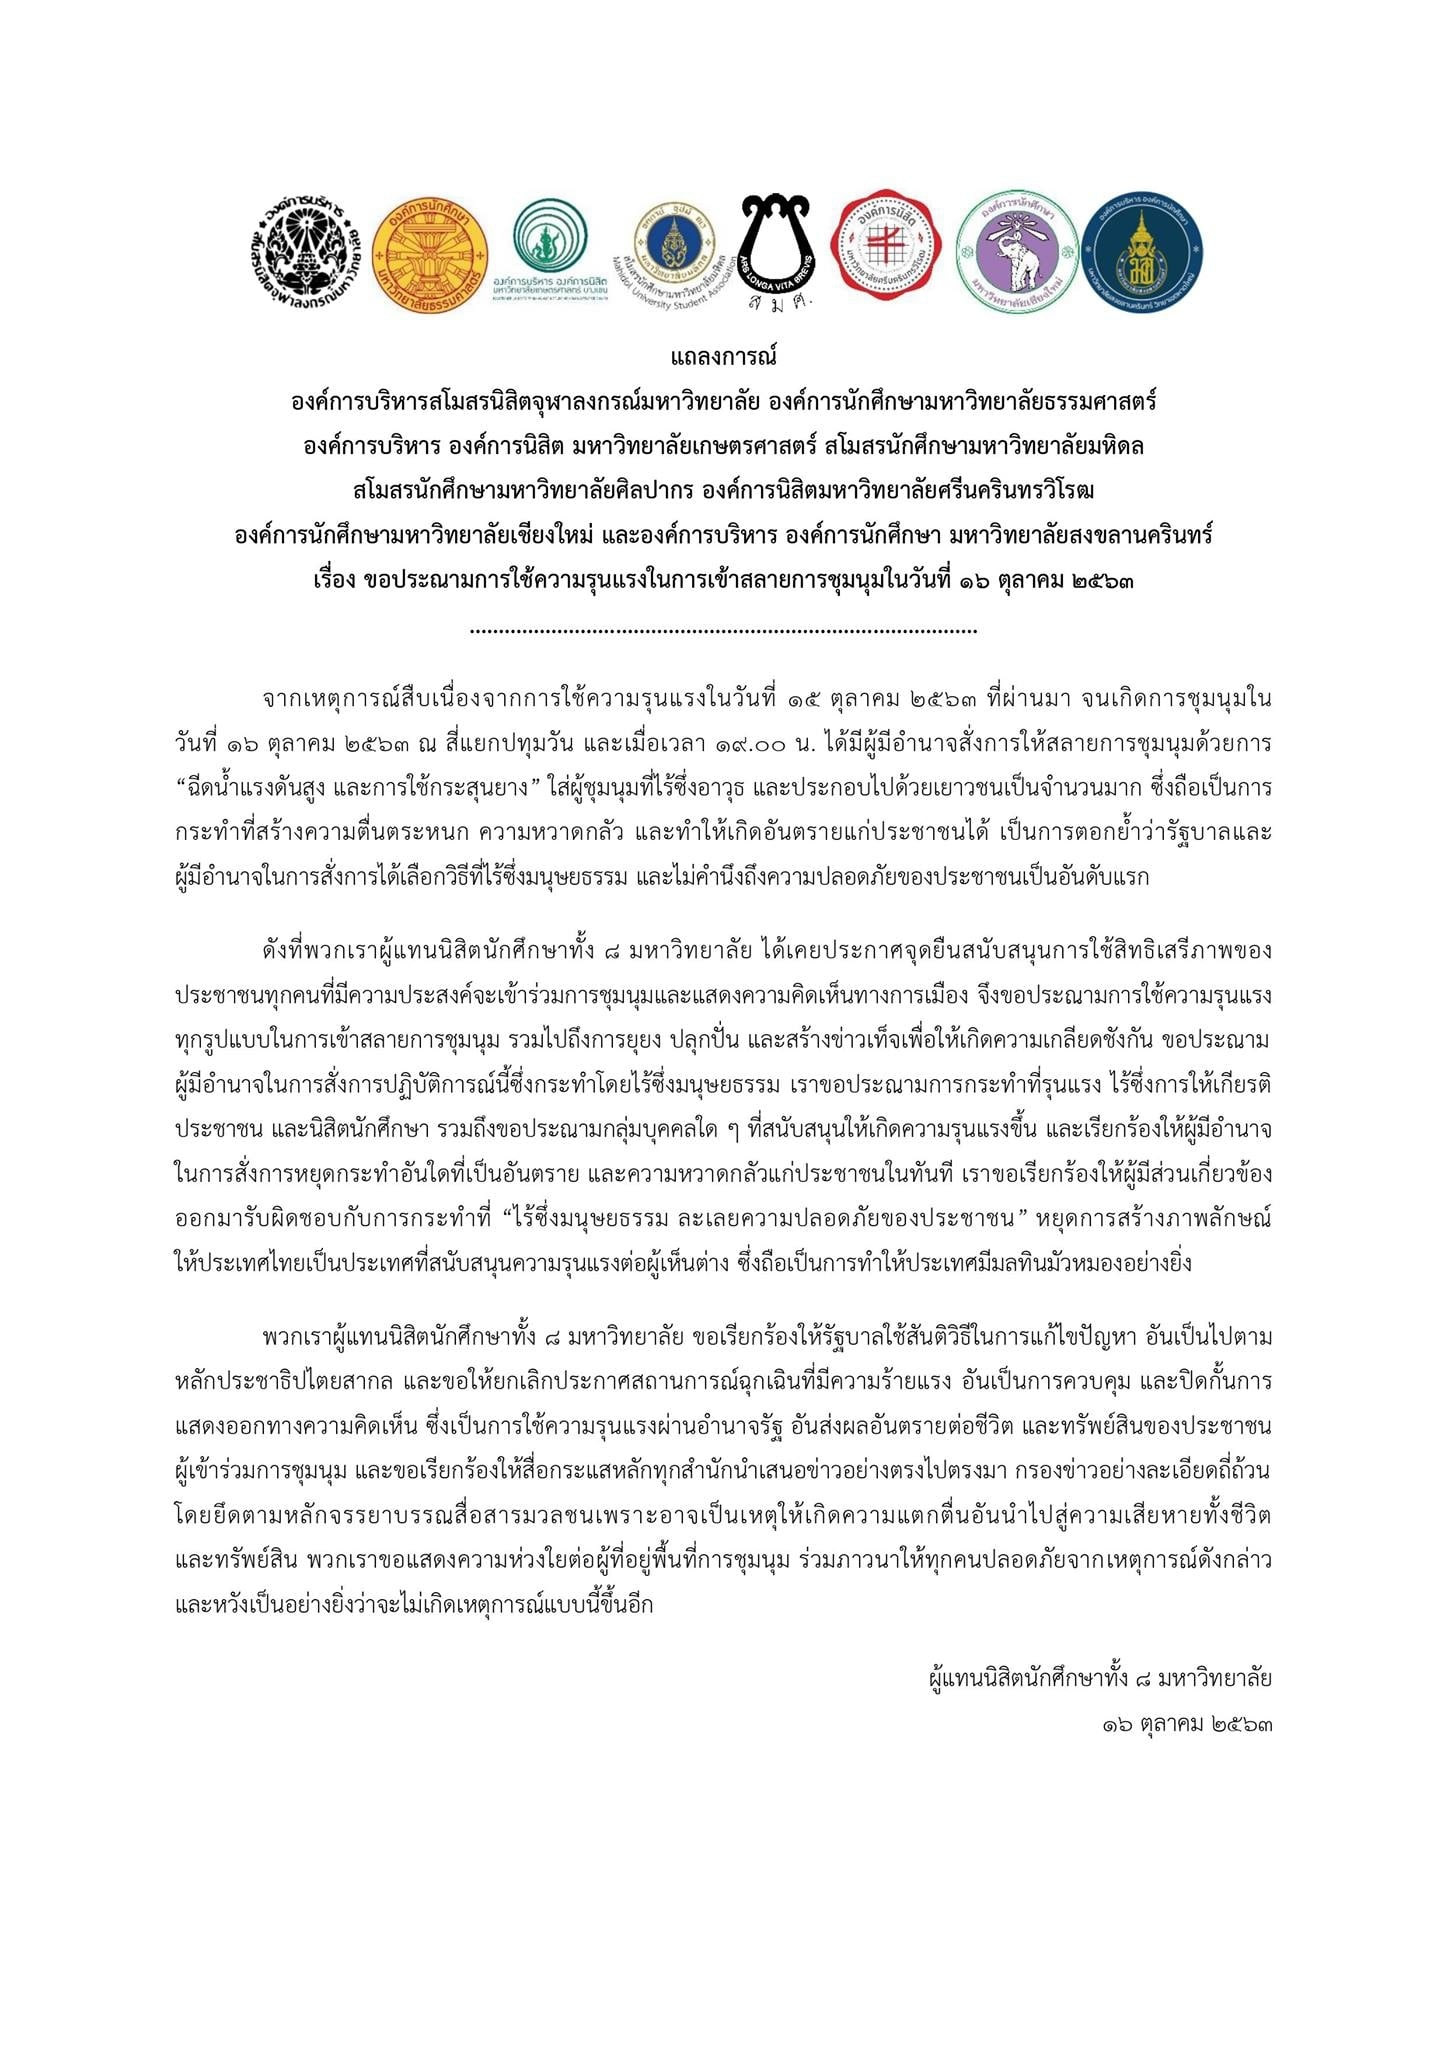 8つの大学の学生代表がタイ政府に抗議声明、放水でのデモ隊強制排除で